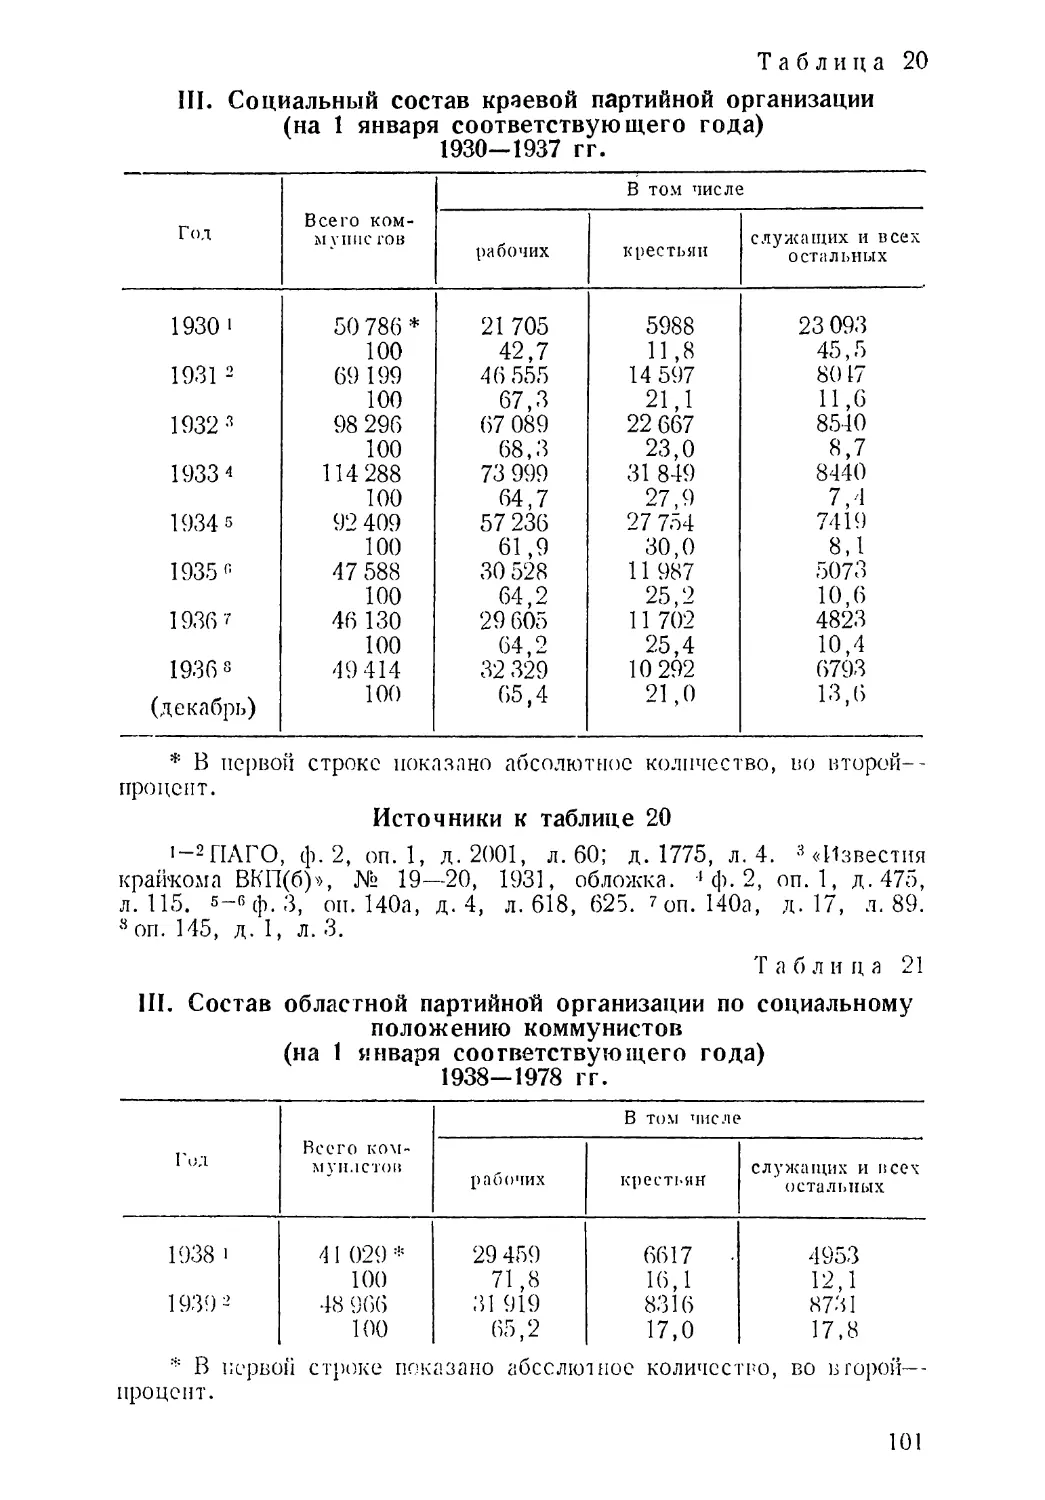 1930—1937 гг. Таблица 20
1938—1978 гг. Таблица 21